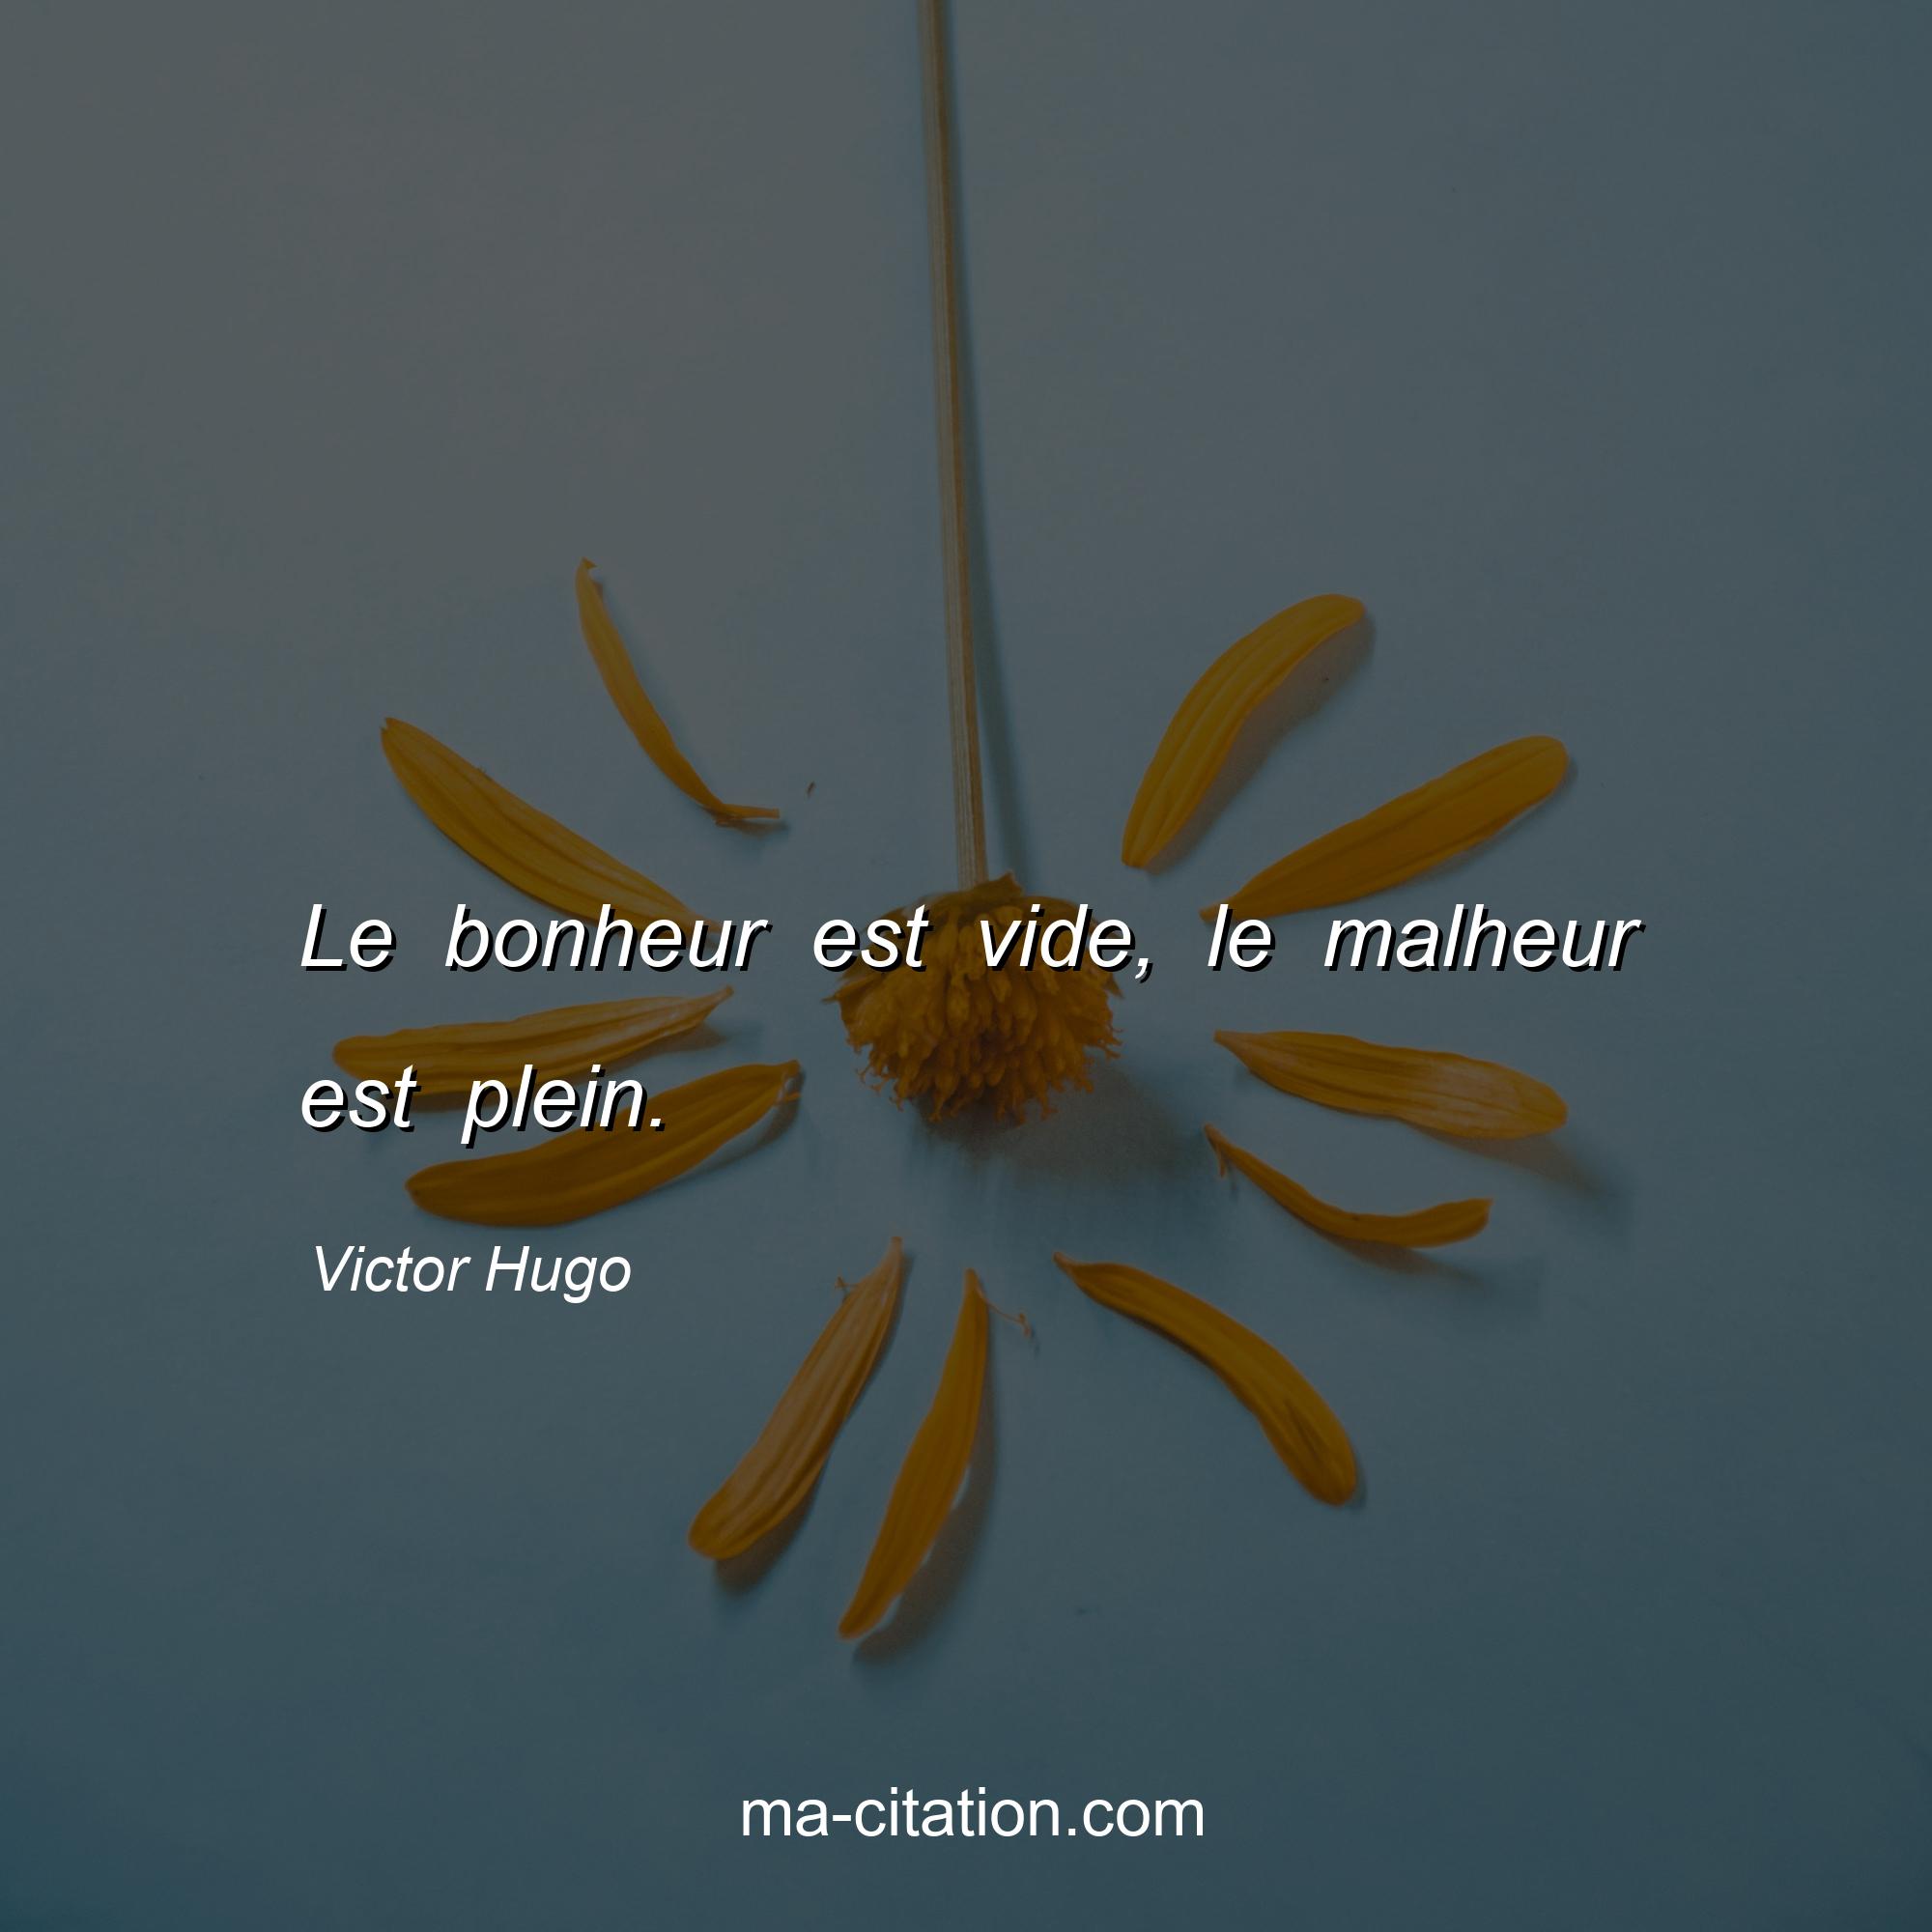 Victor Hugo : Le bonheur est vide, le malheur est plein.